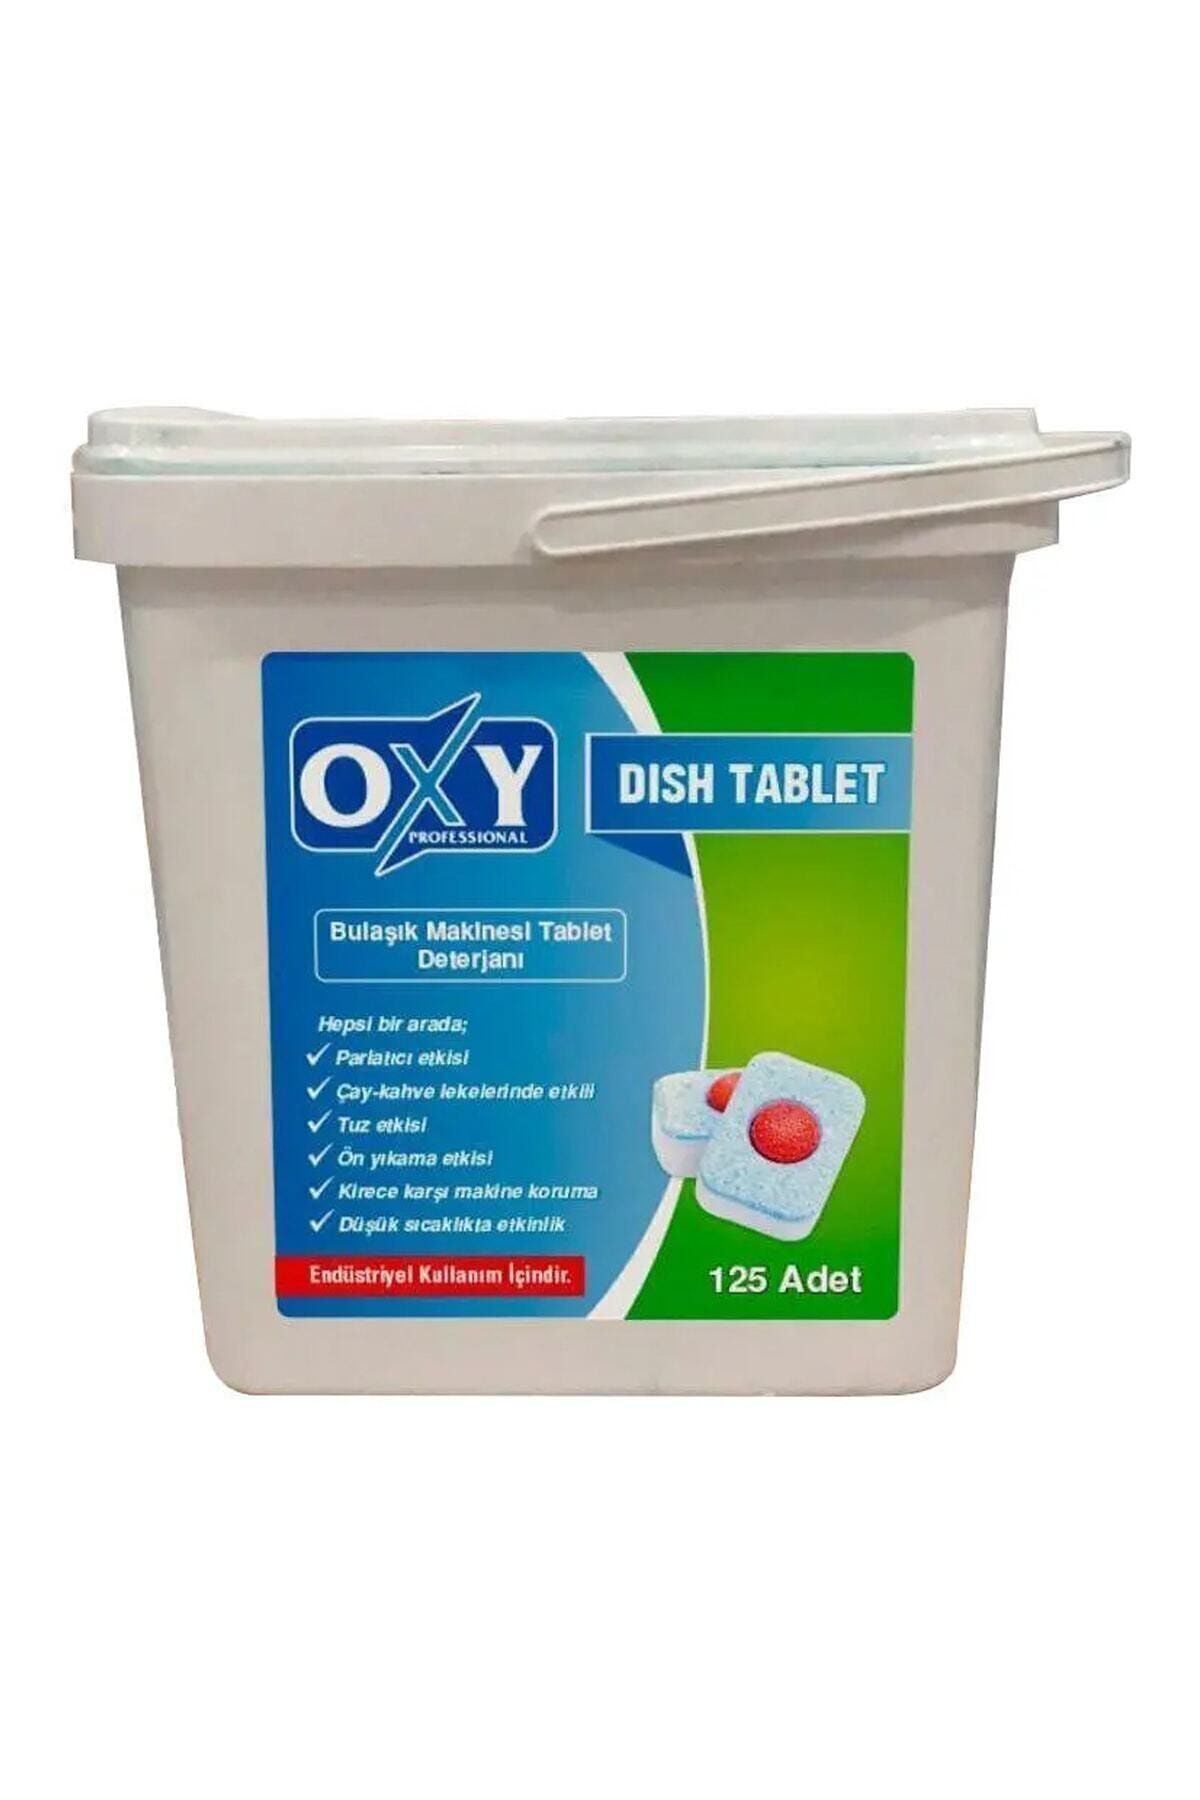 Oxy Bulaşık Makinesi Tablet Deterjanı-125 Adet